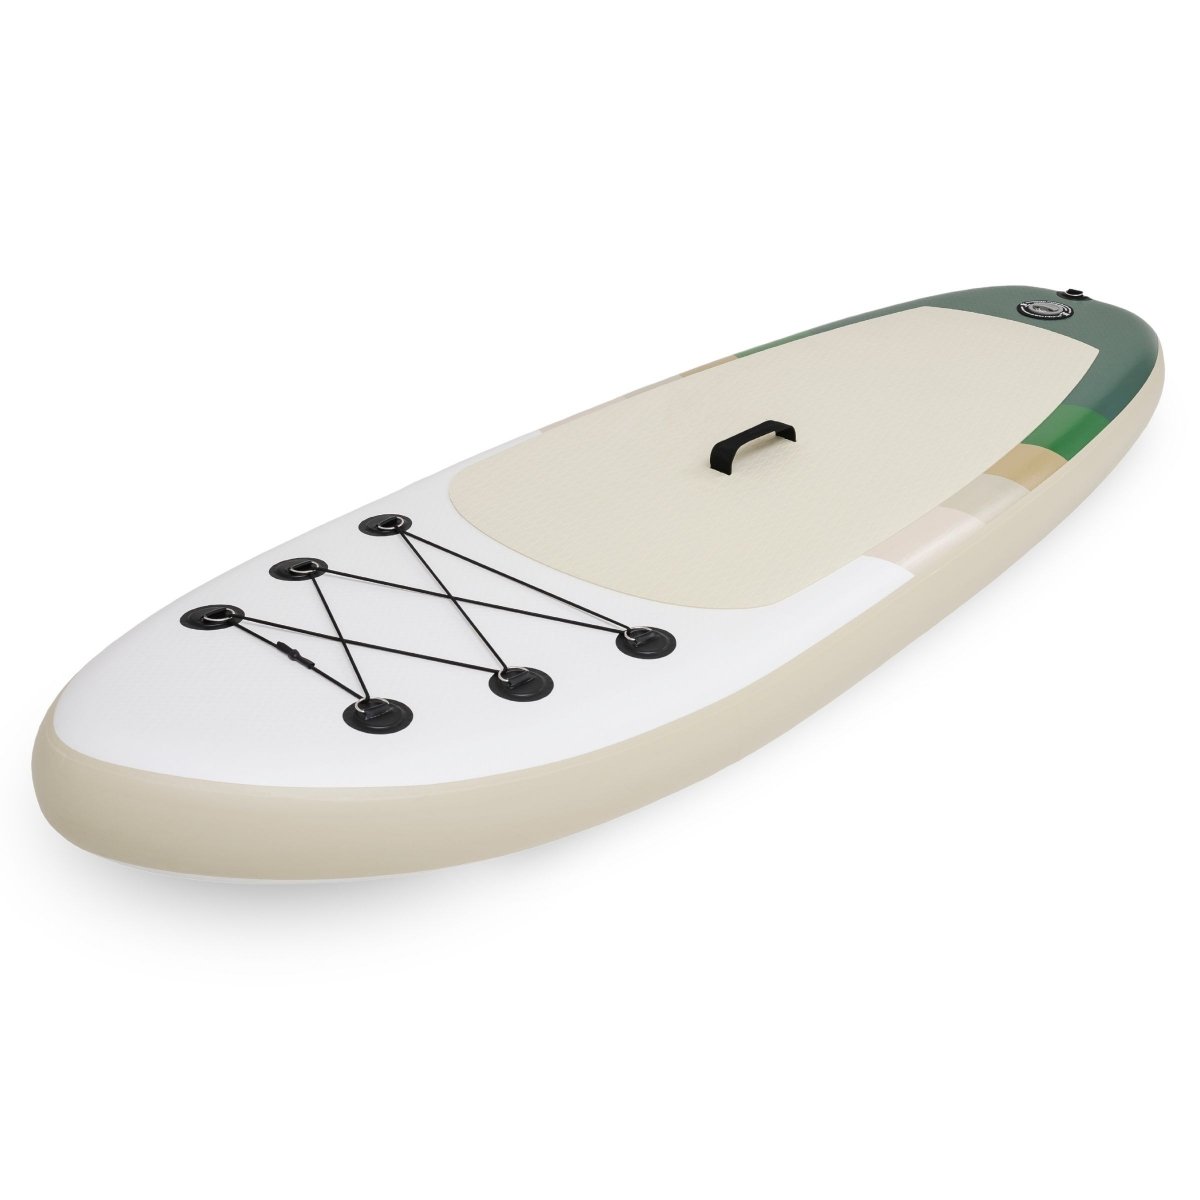 Pompowana deska SUP dla dzieci Stand Up Paddle 215cm z wiosłem - HyperMotion WAVE BOOST 215